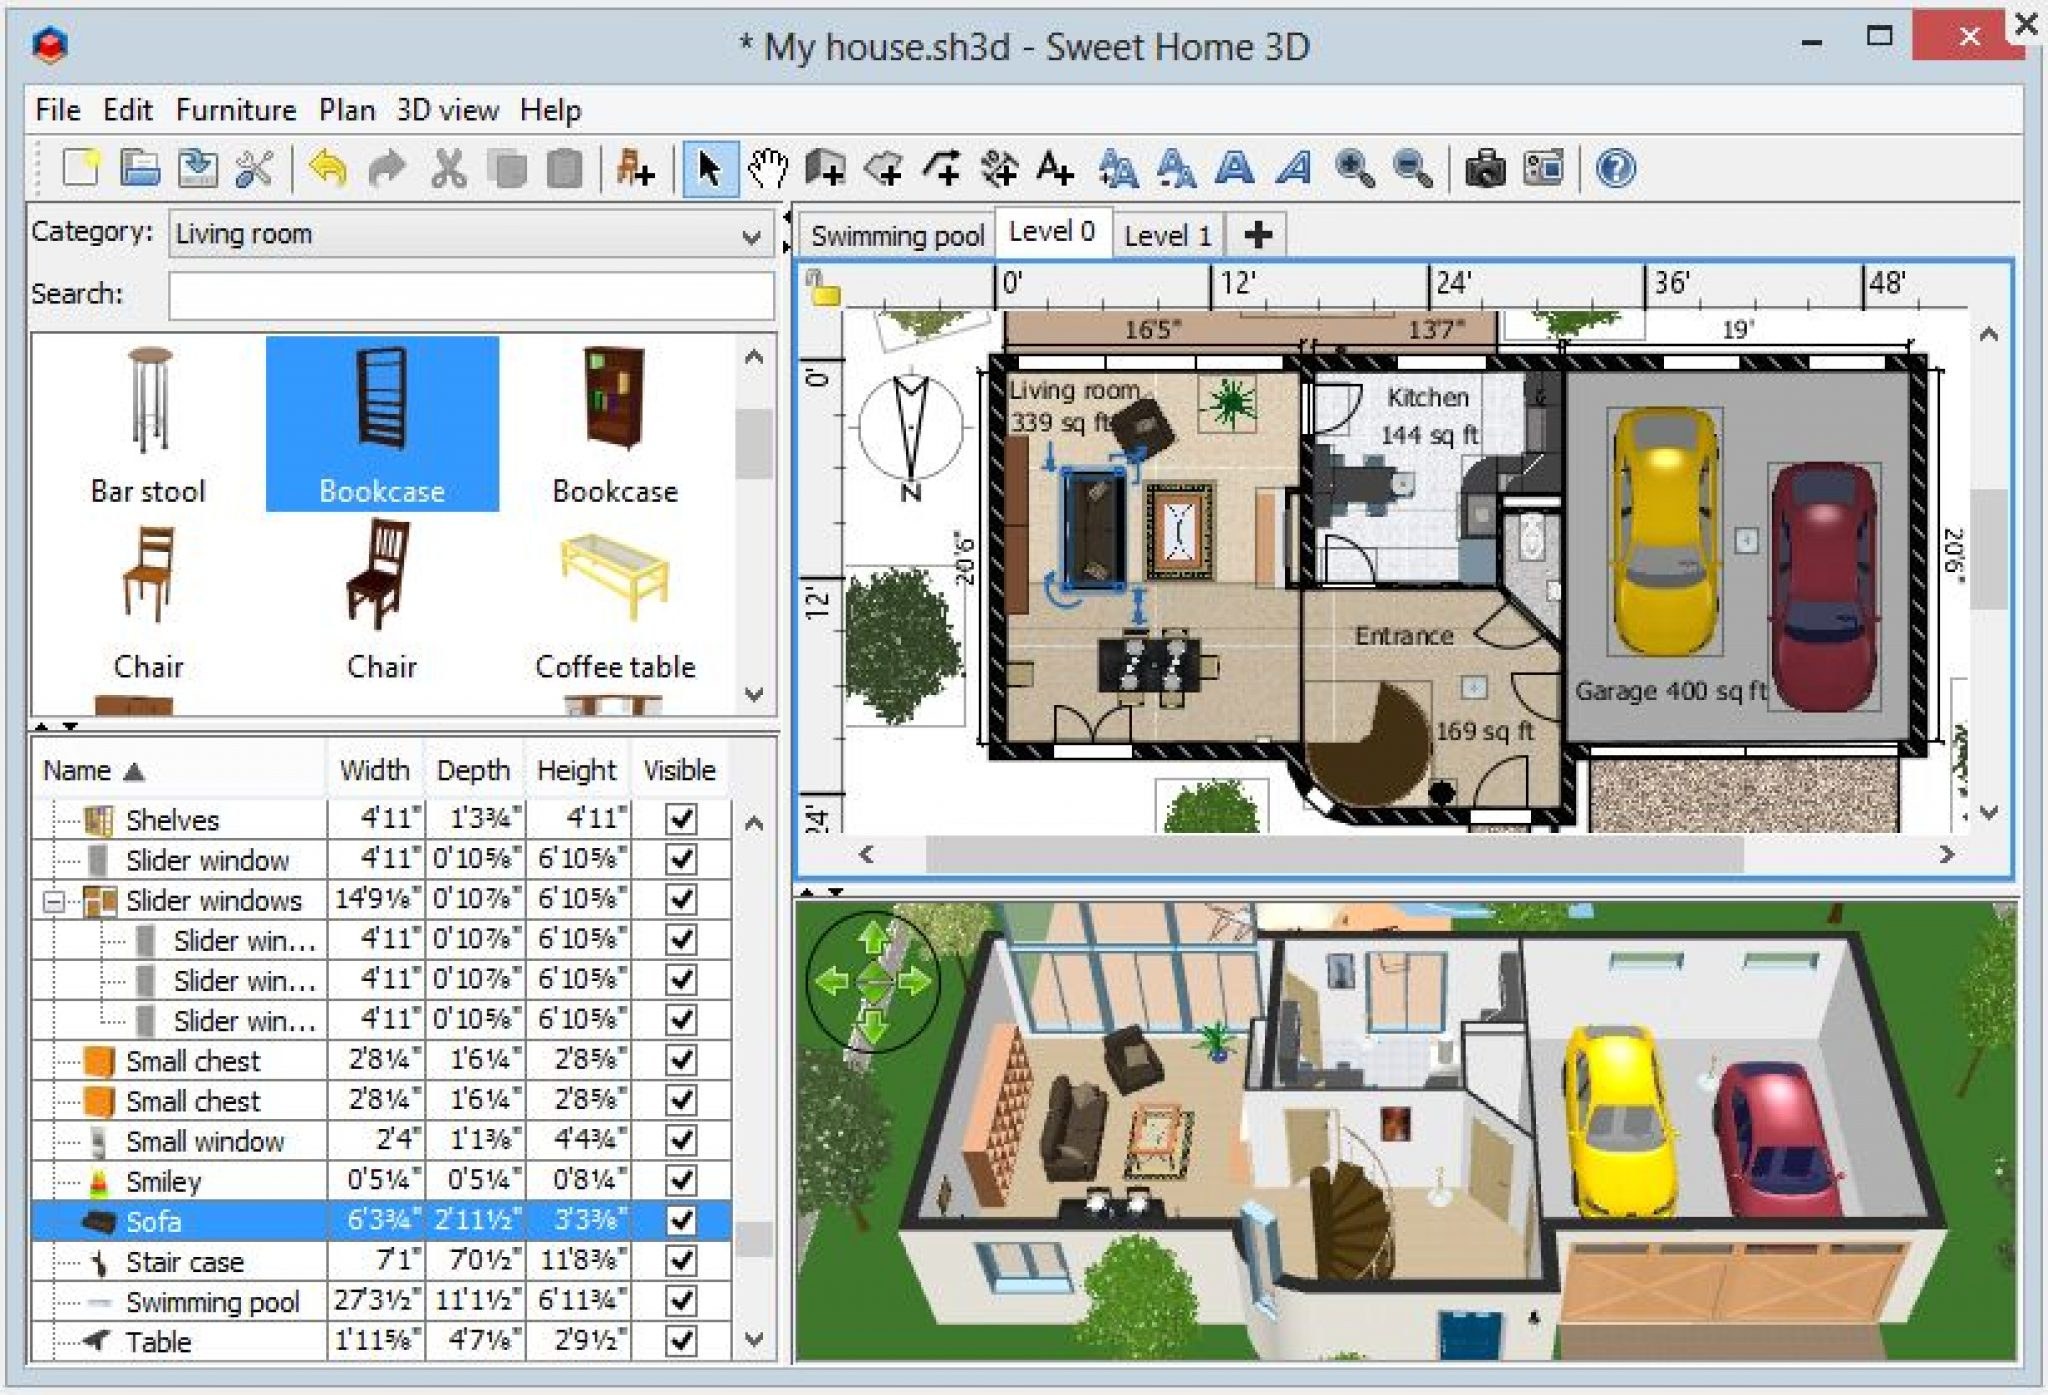 3d home библиотеки. Программа для проектирования домов Sweet Home 3d. План дома для программы Sweet Home 3d. Программа для моделирования домов 3д Свит хоум. 3d моделирование программы Sweet Home.